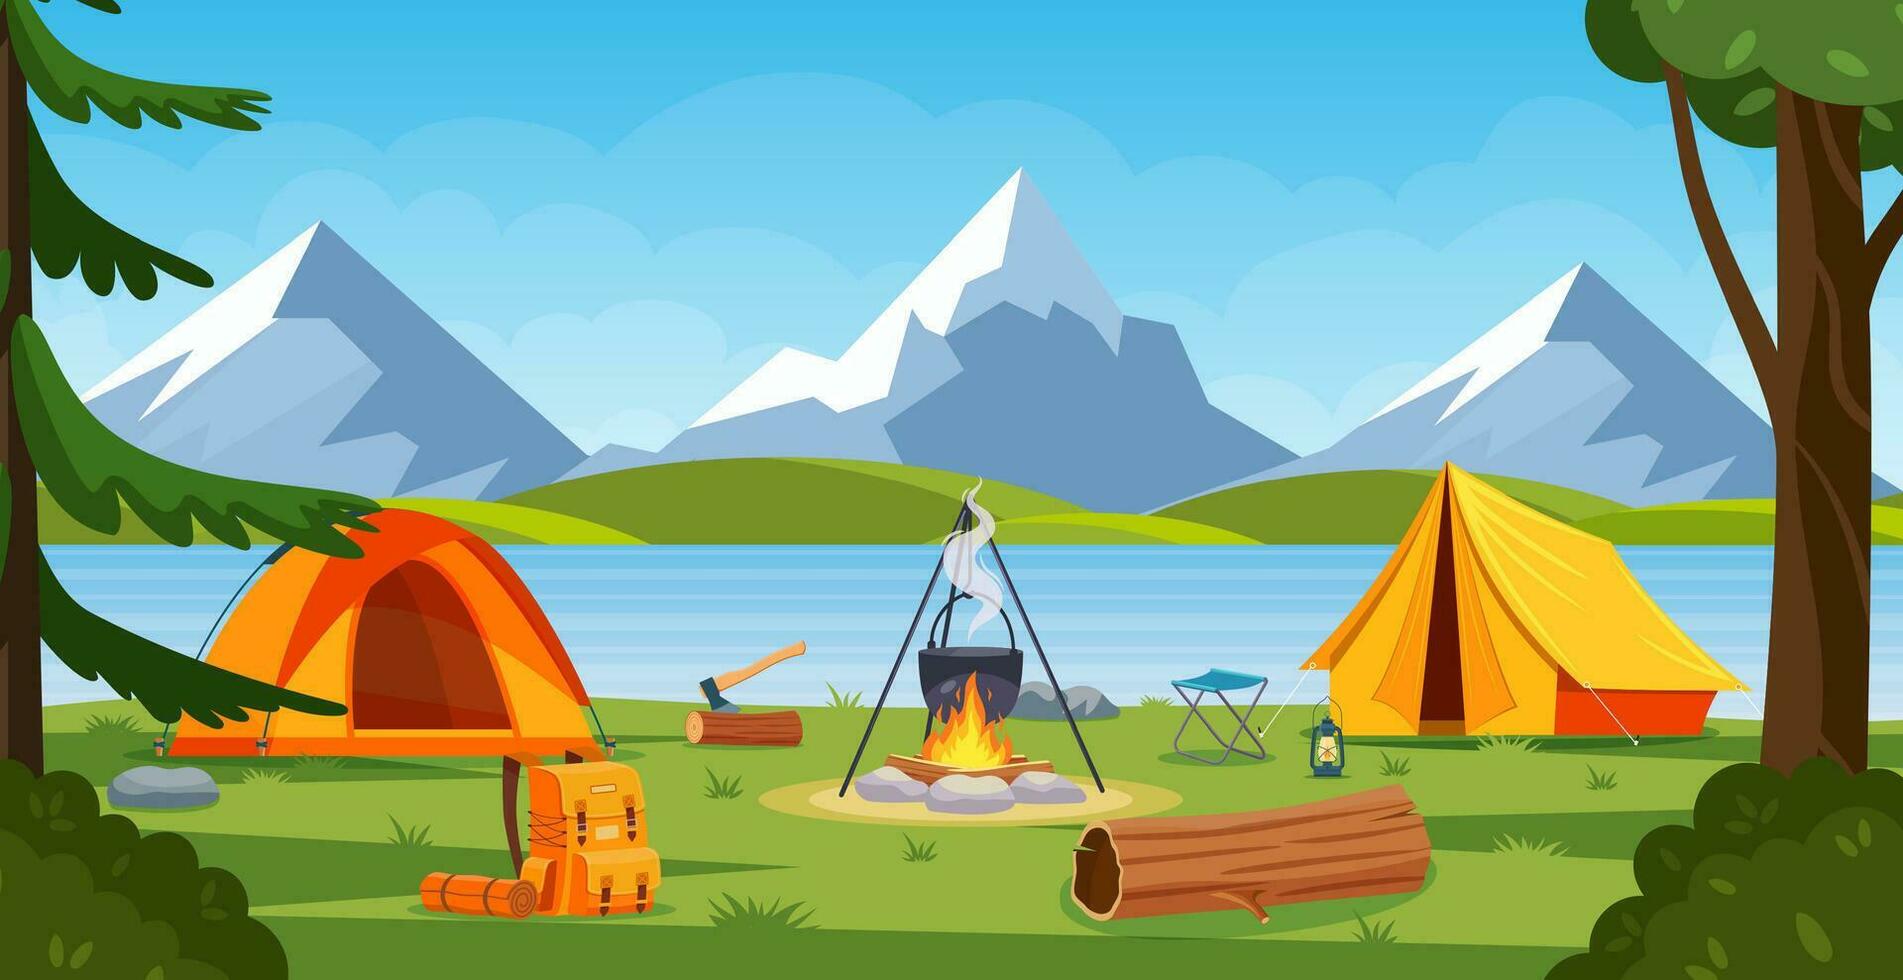 sommar läger i skog med bål, tält, ryggsäck och lykta. tecknad serie landskap med fjäll, skog och campingplats. Utrustning för resa, vandring. vektor illustration i platt stil